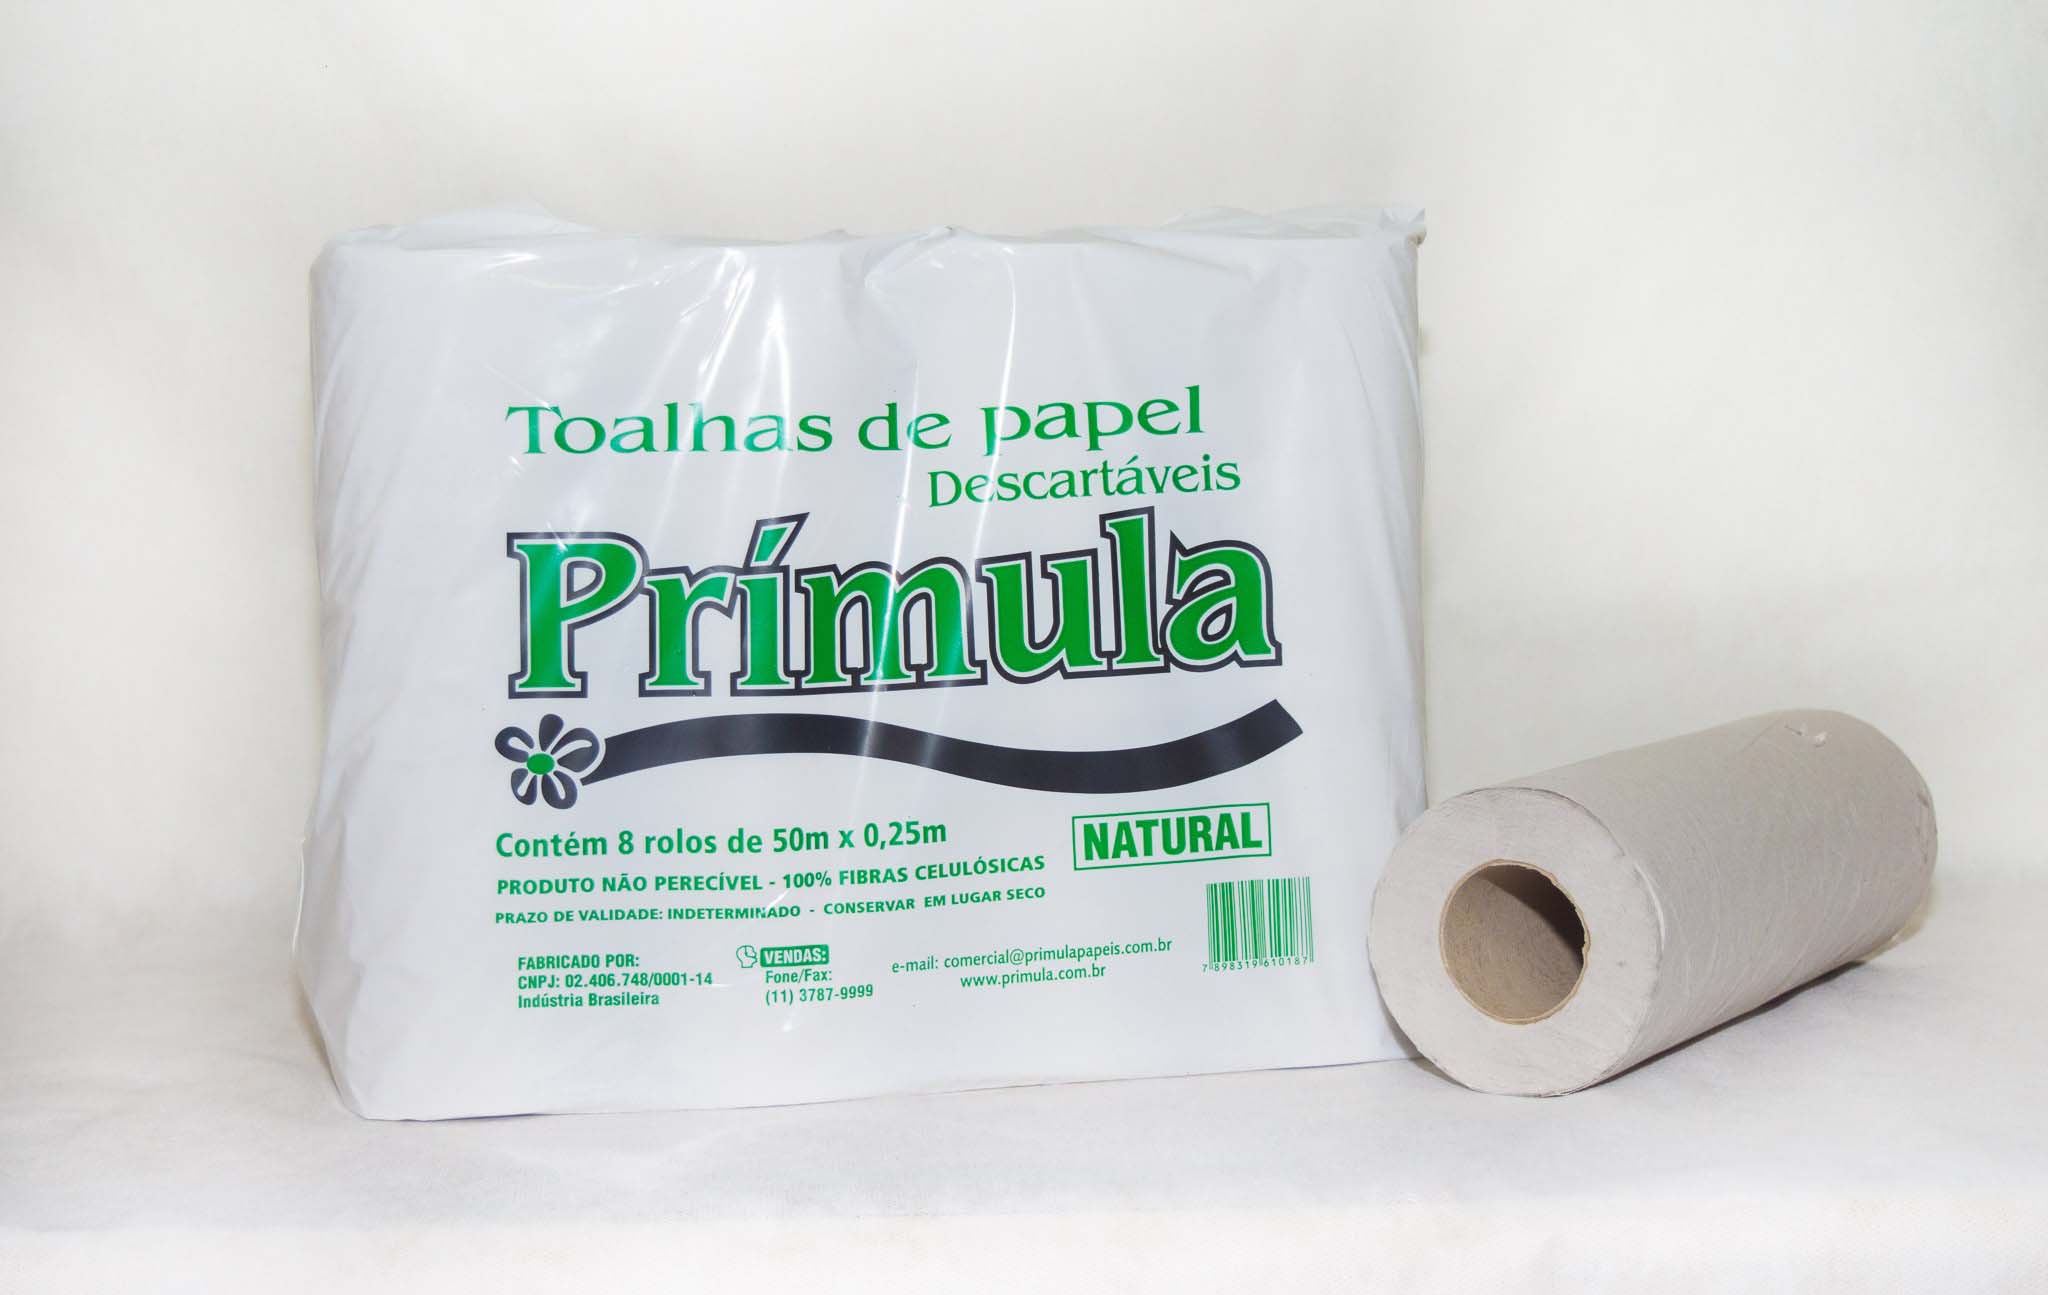 Indústria de papel toalha